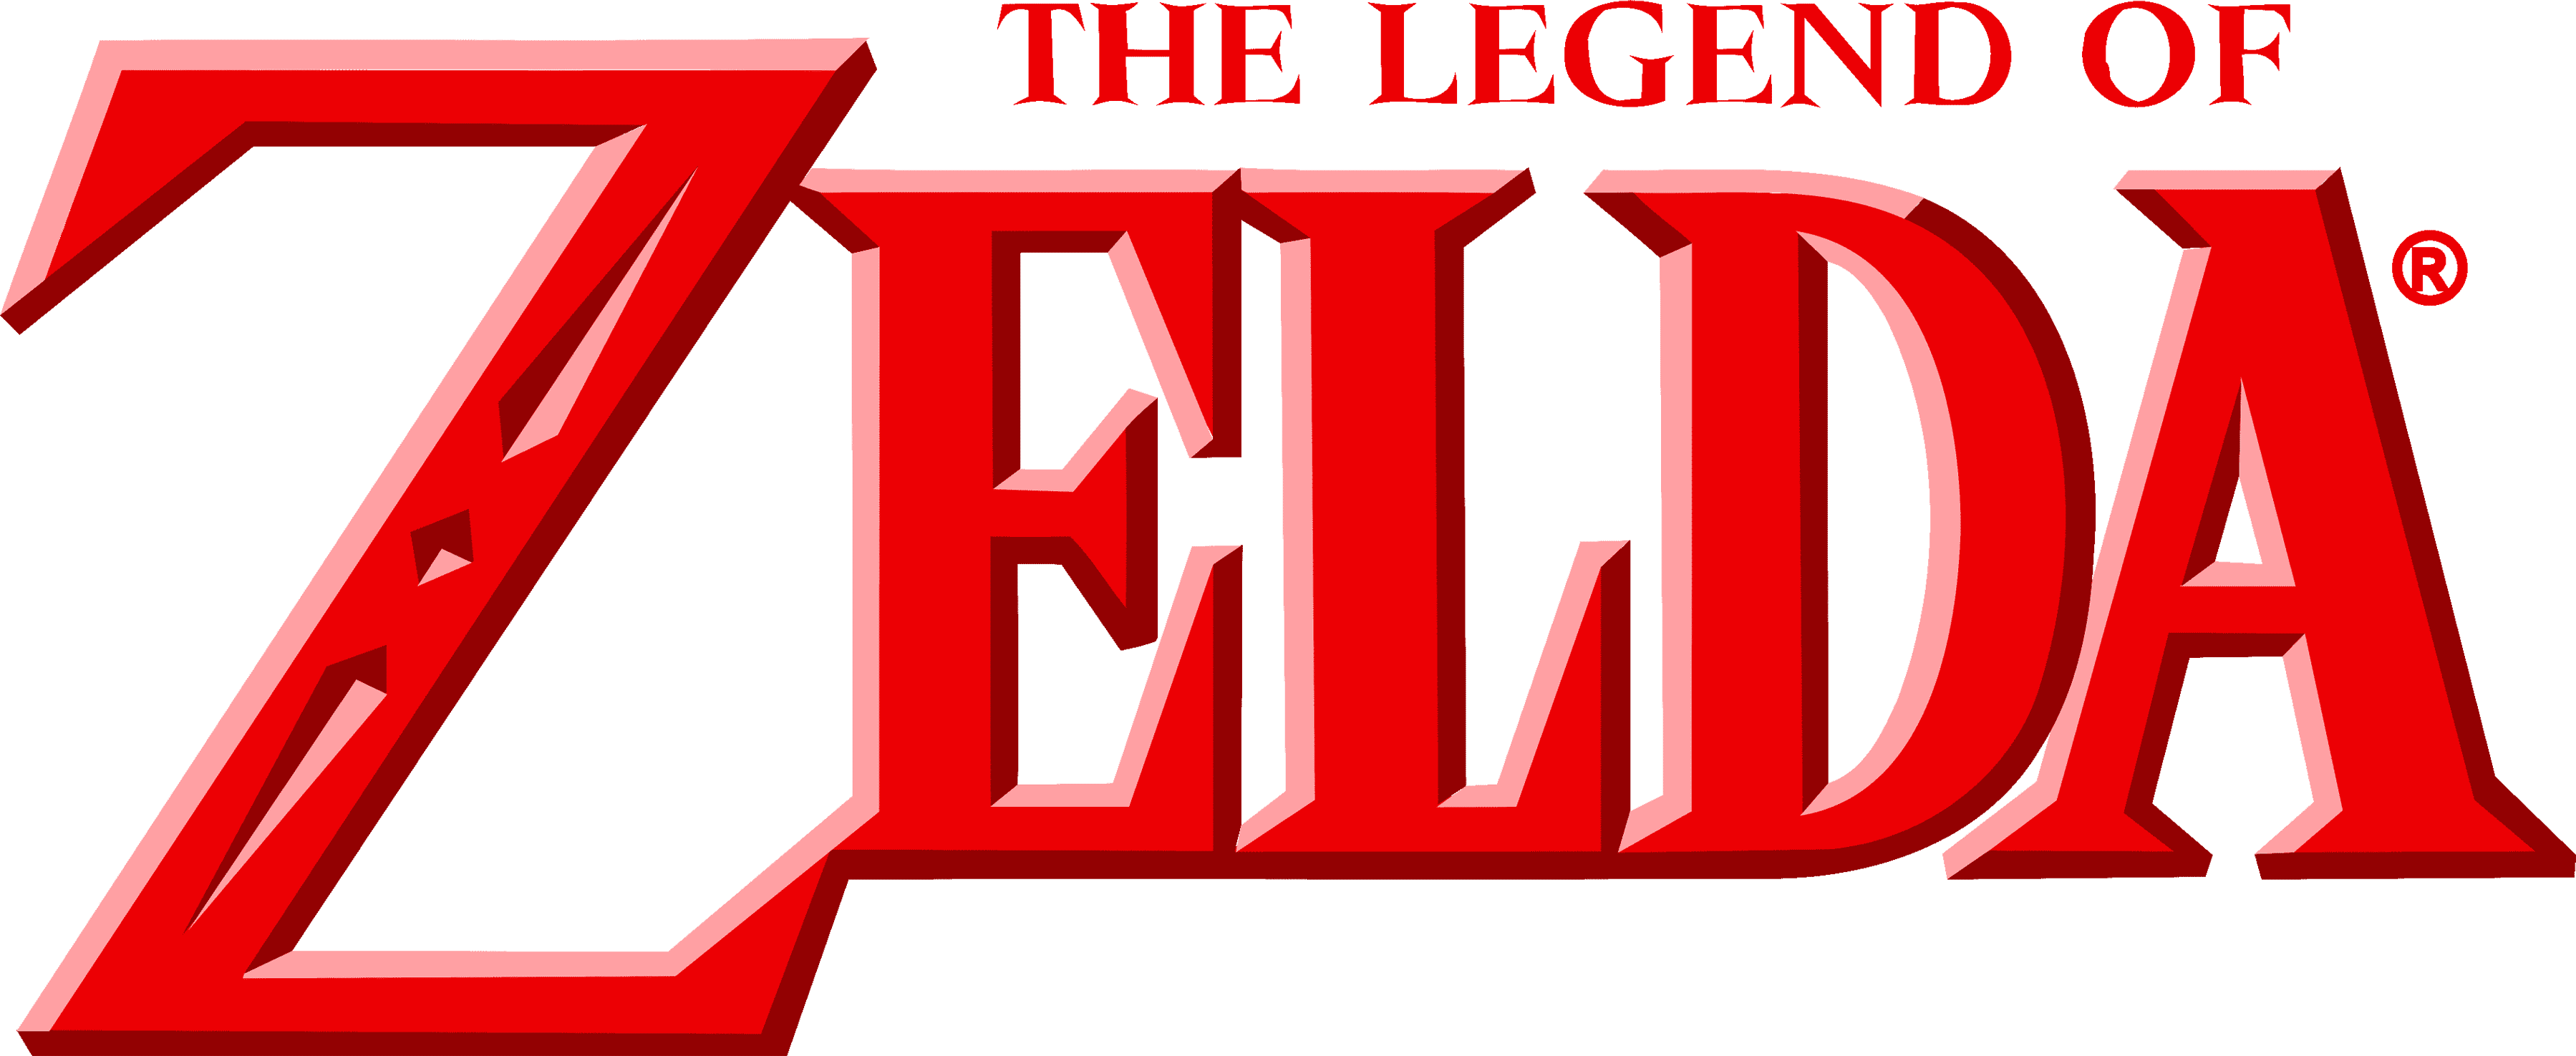 The Legend of Zelda (series)